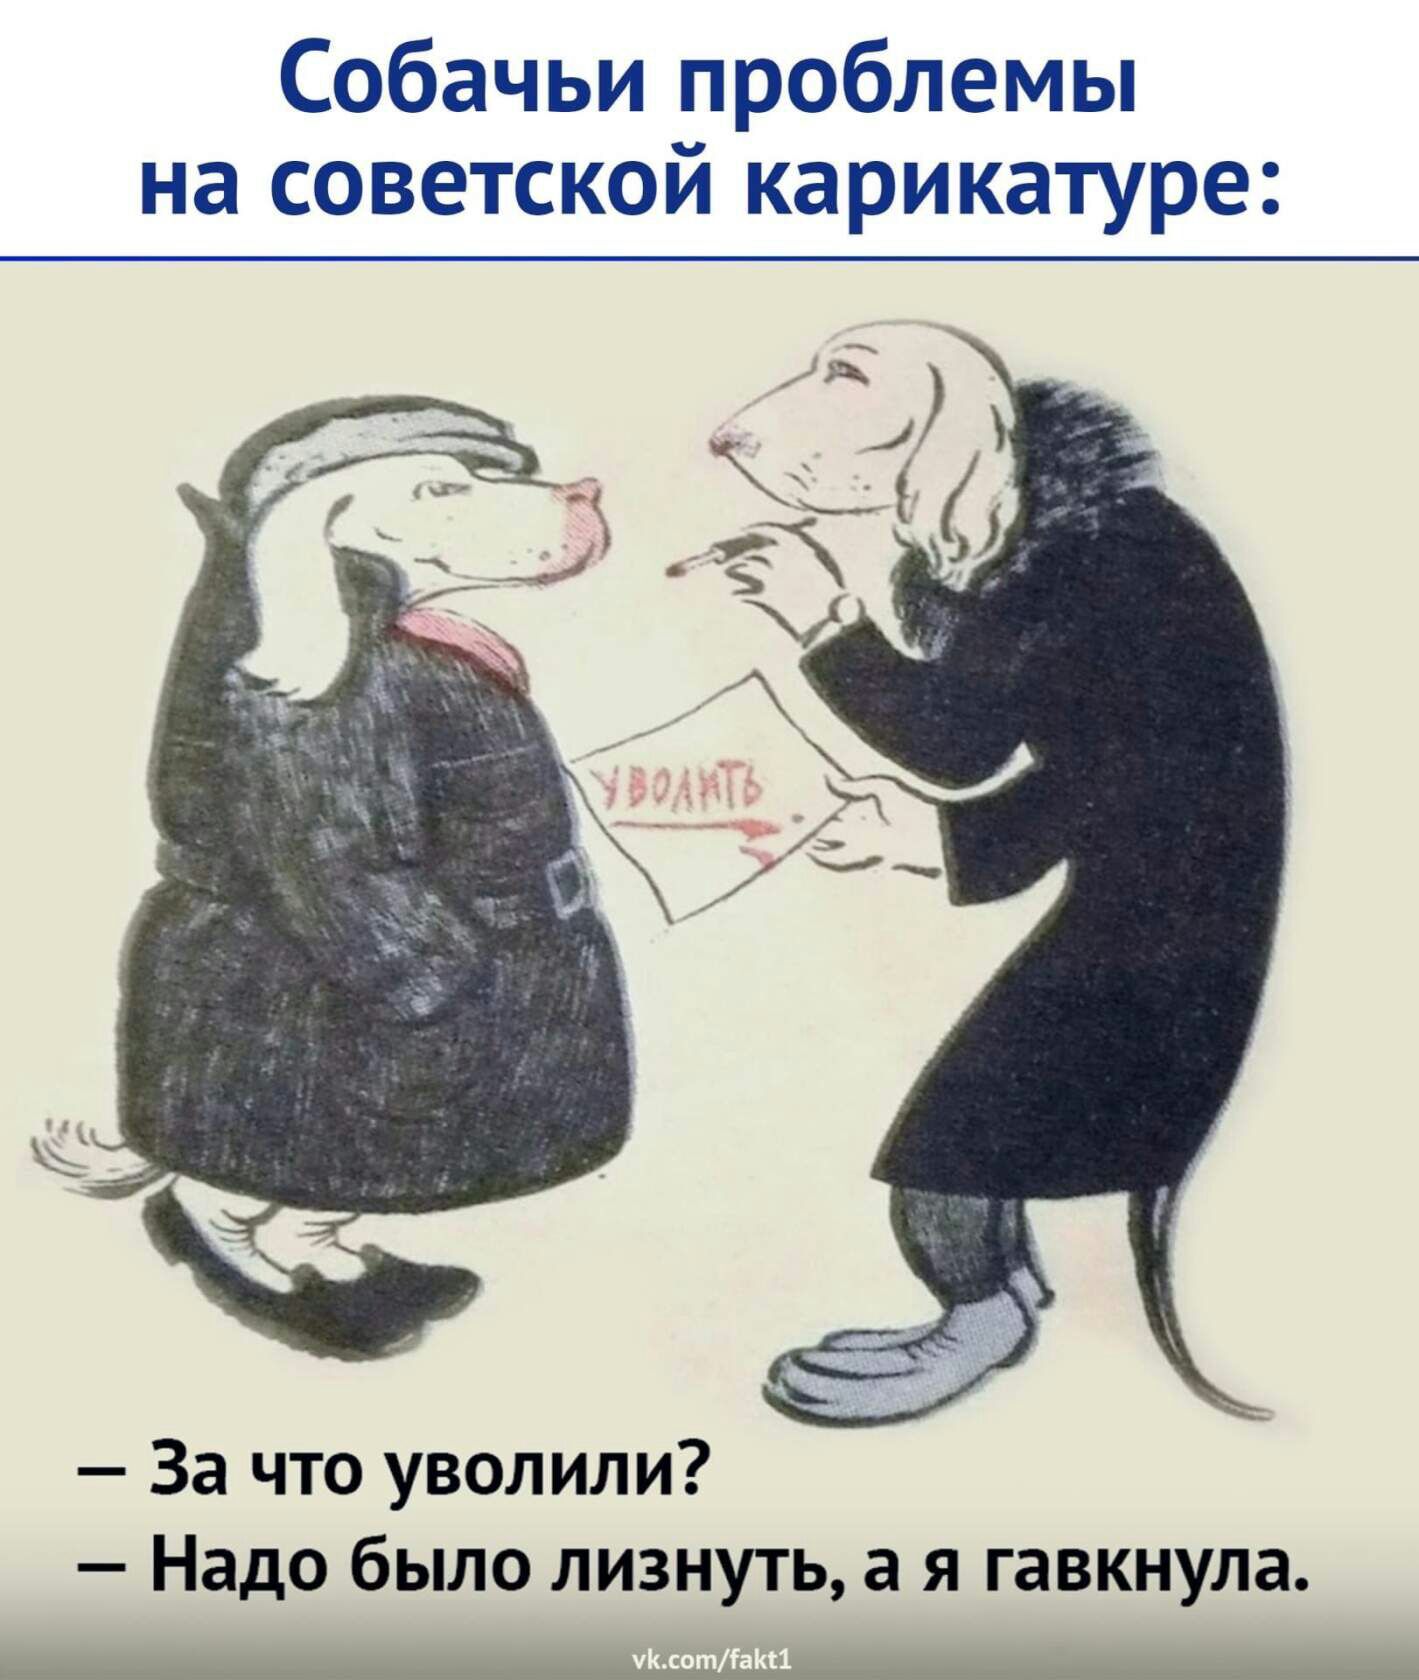 Собачьи проблемы на советской карикатуре За что уволили Надо было лизнуть а я гавкнула ь г 21 _а га щ гц